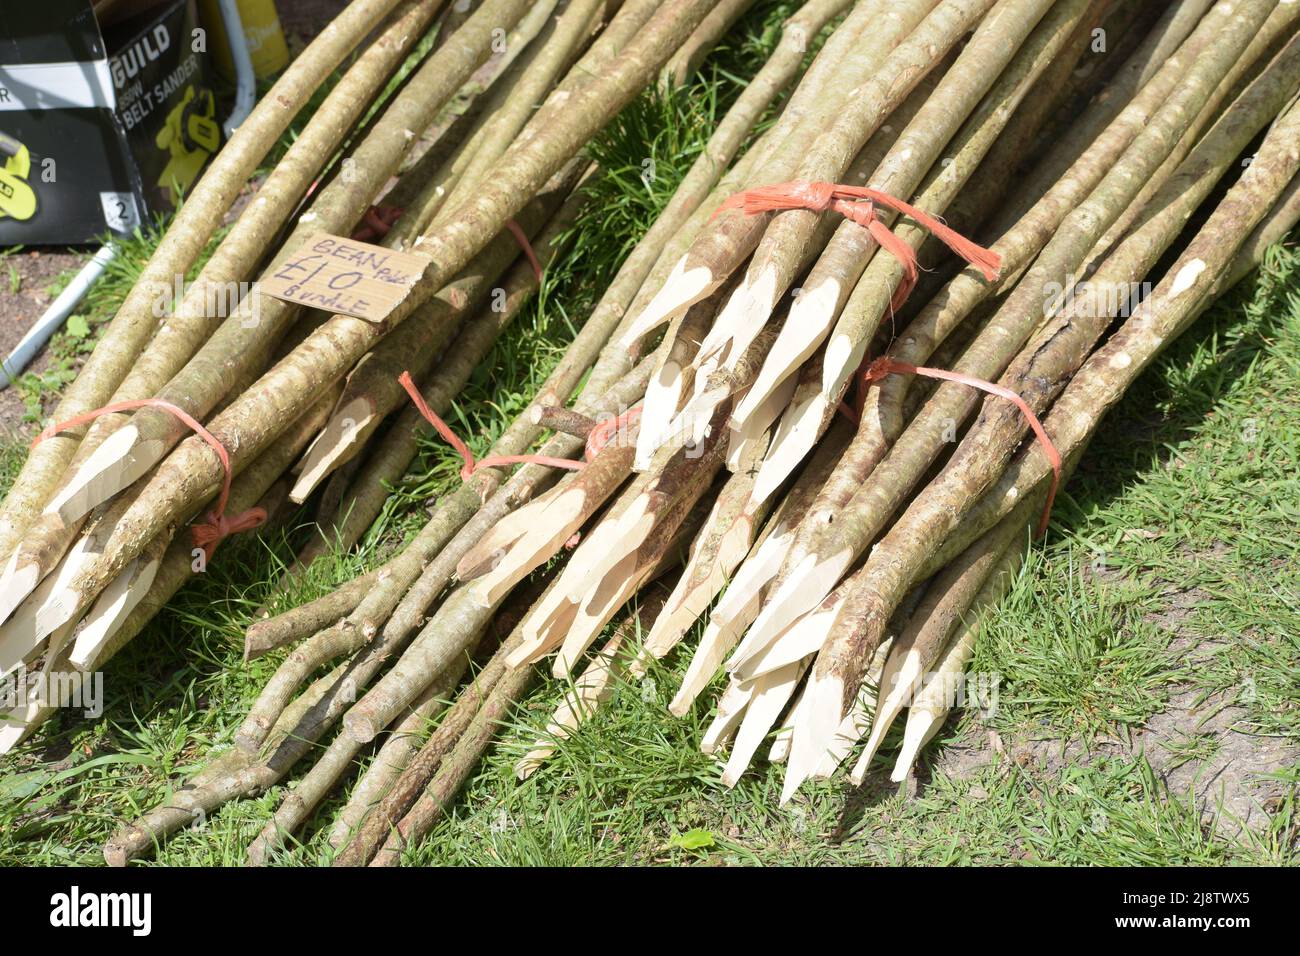 Préparation de poteaux de haricots avec du bois de noisette fraîchement coupé dans la forêt d'été. Dorset Royaume-Uni Banque D'Images